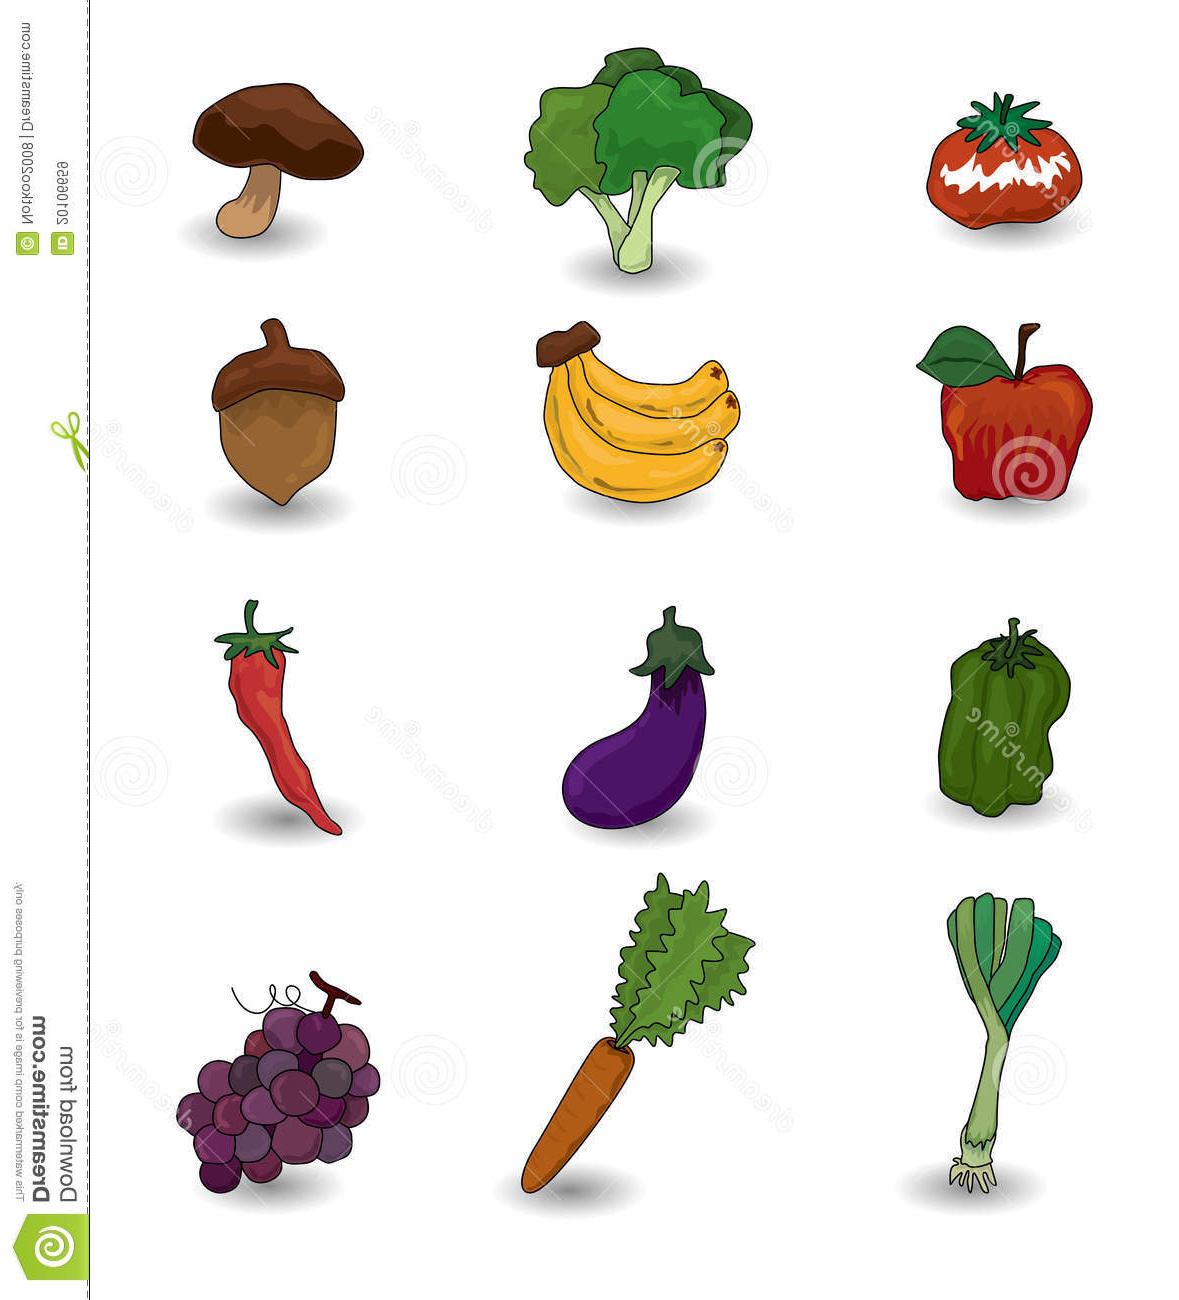 Fruit Et Legume Dessin Nouveau Photos Positionnement De Graphisme De Fruits Et Légumes De Dessin